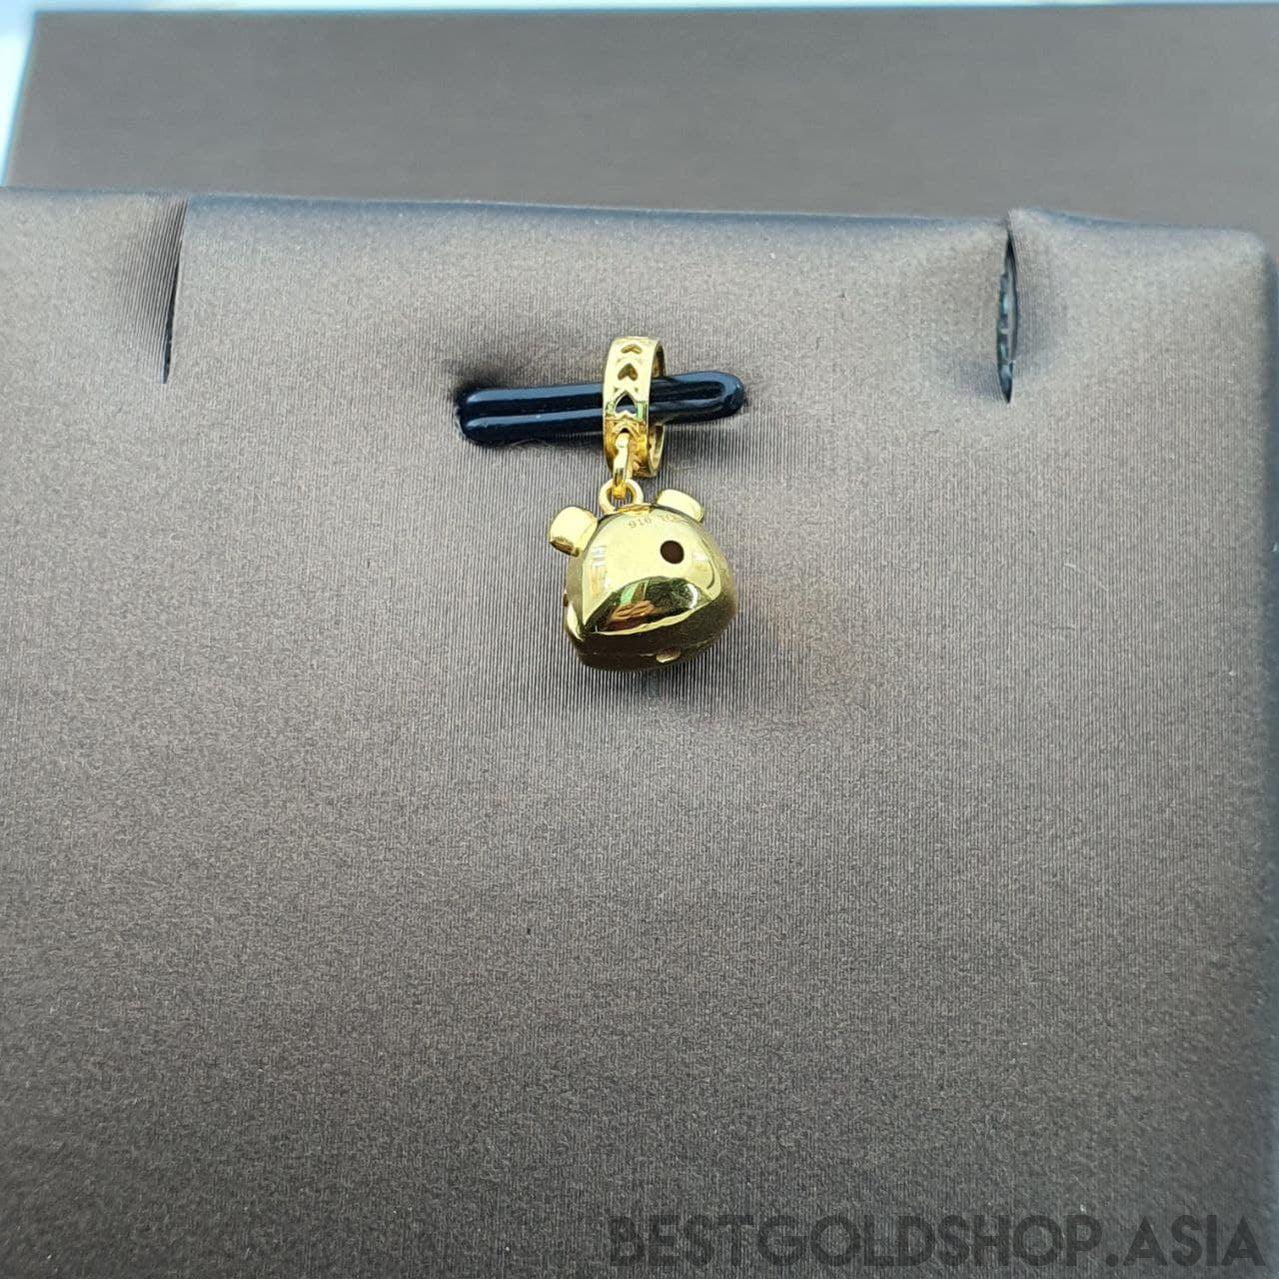 22k / 916 Gold Tiger Charm / Pendant-Charms & Pendants-Best Gold Shop